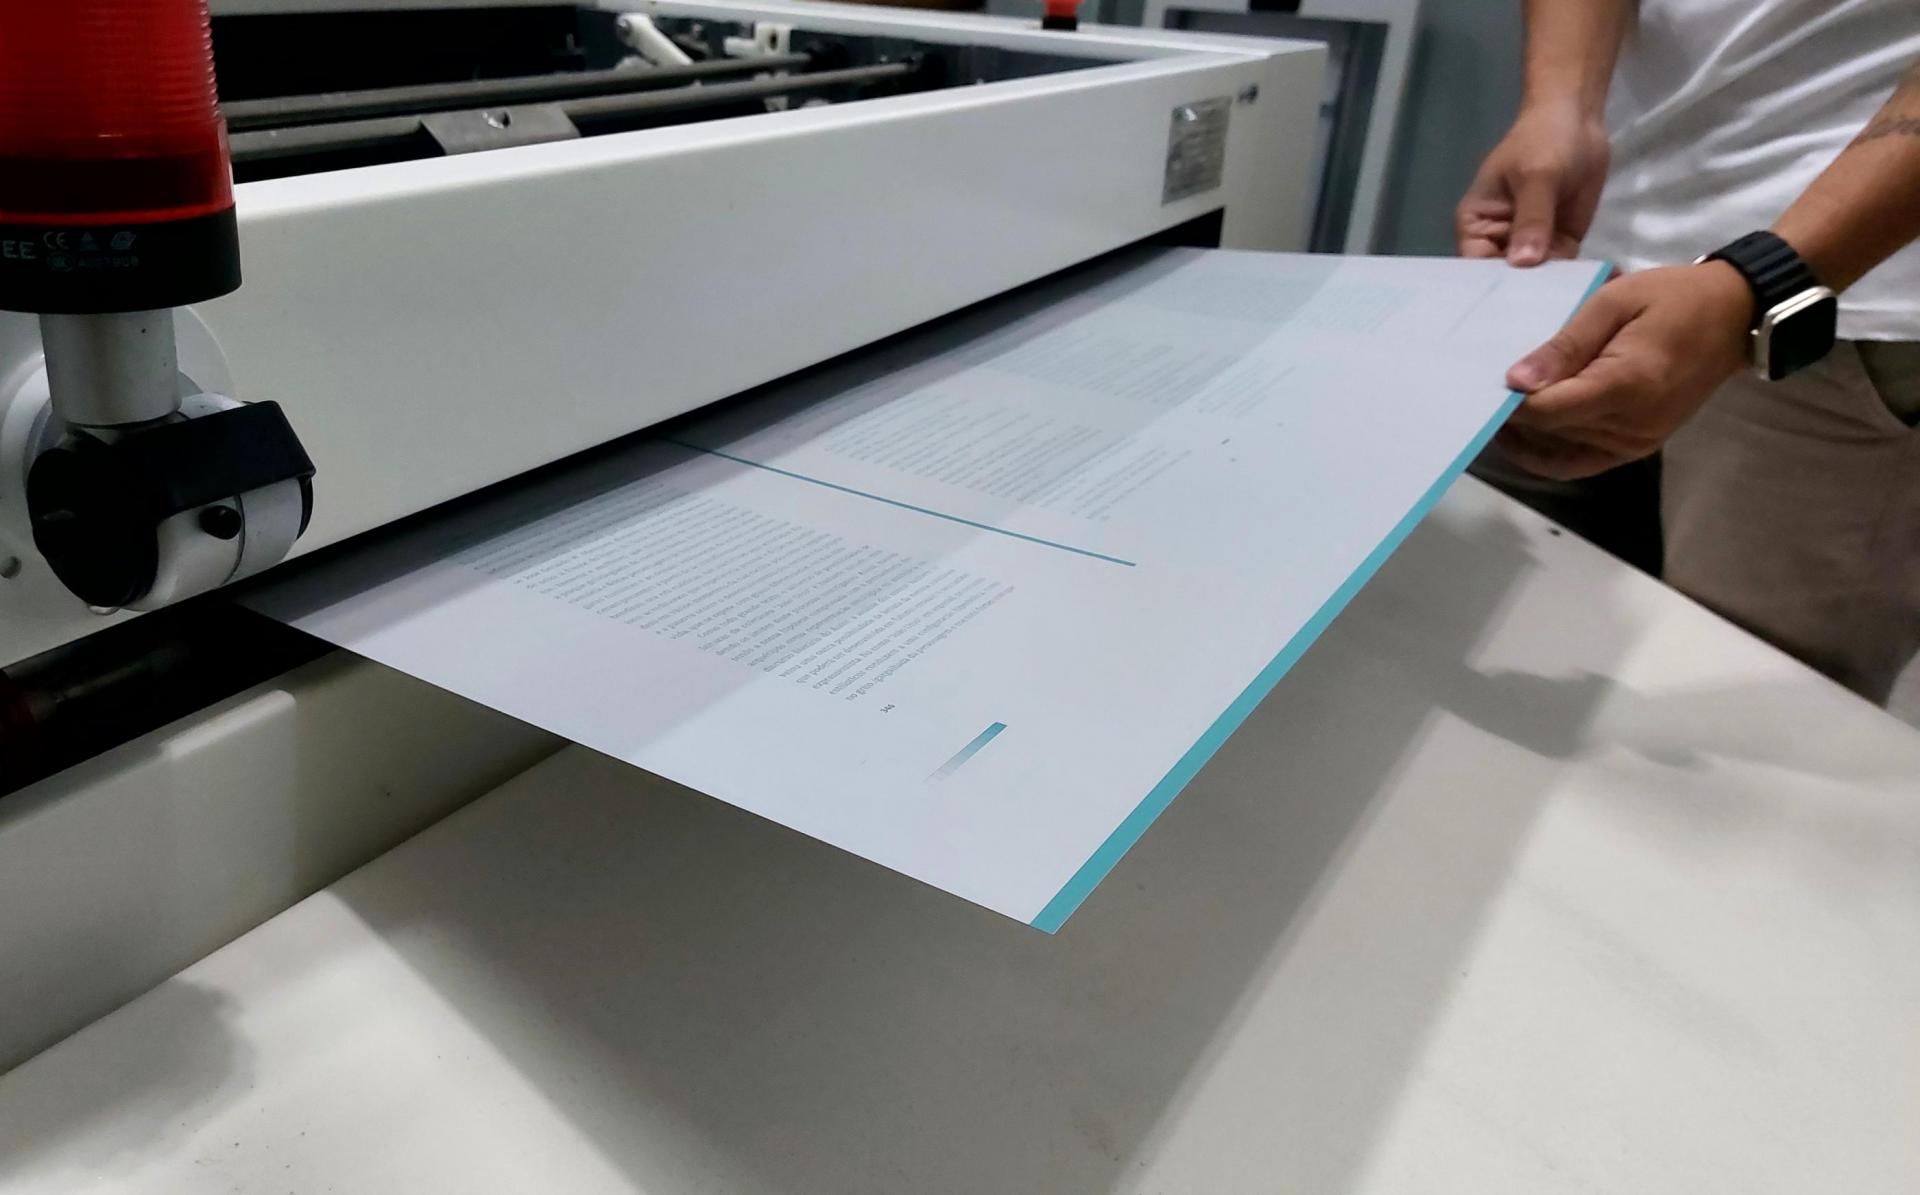 Imprensa Oficial Graciliano Ramos explica como diferenciar a impressão digital e offset